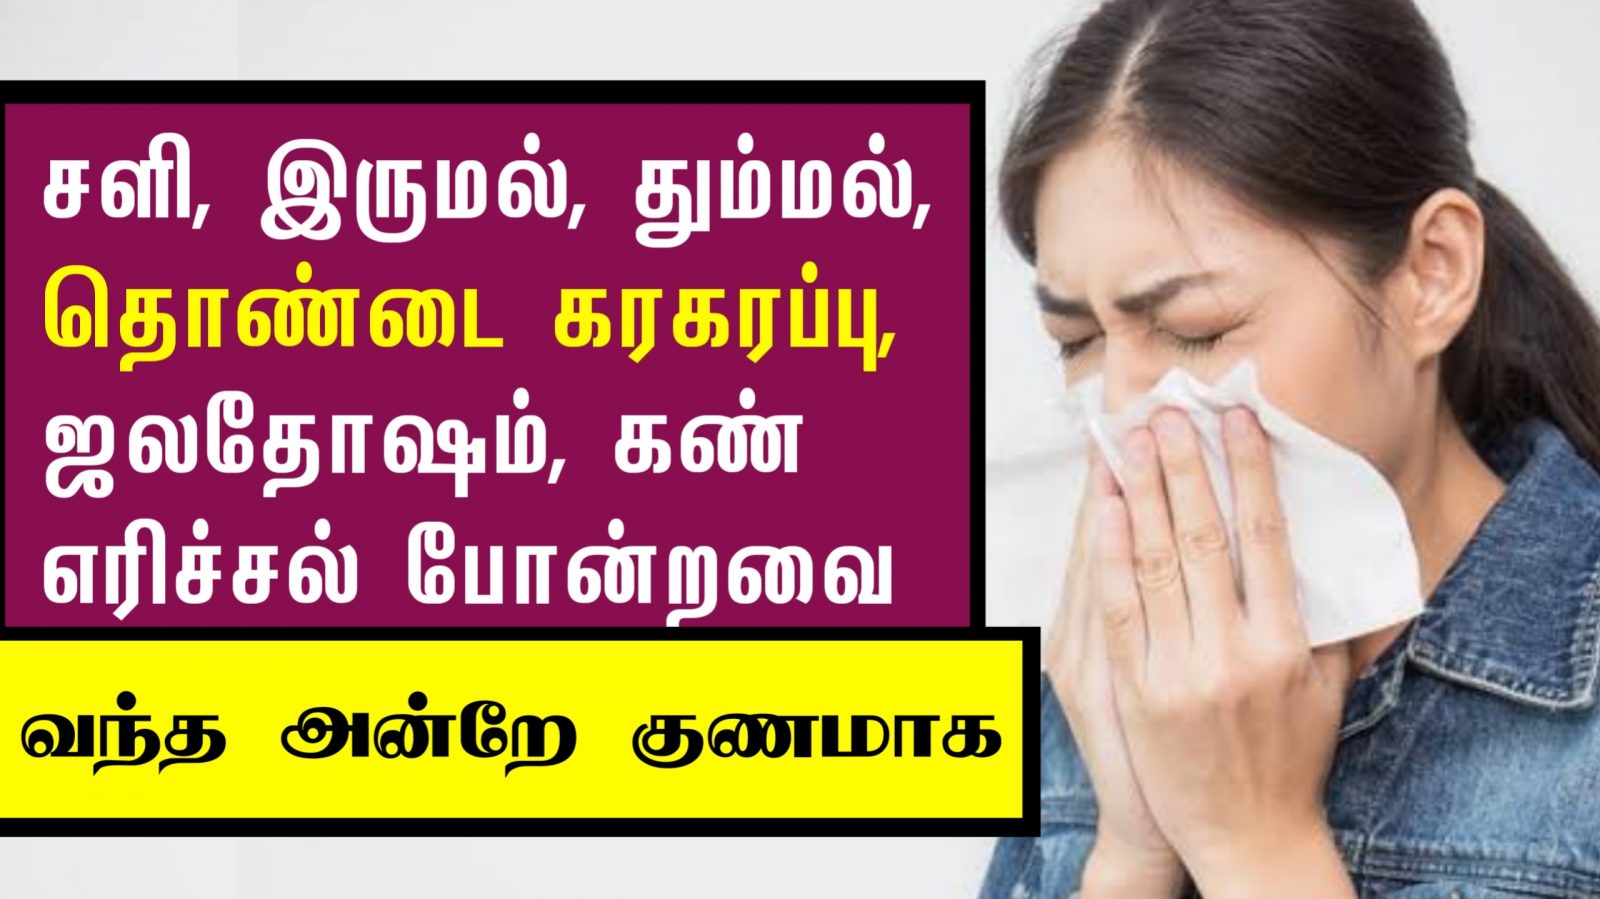 சளி, இருமல், ஜலதோஷம் வந்த ஒரே நாளில் குணமாக | Cold & Cough Remedies in Tamil | Next Day 360